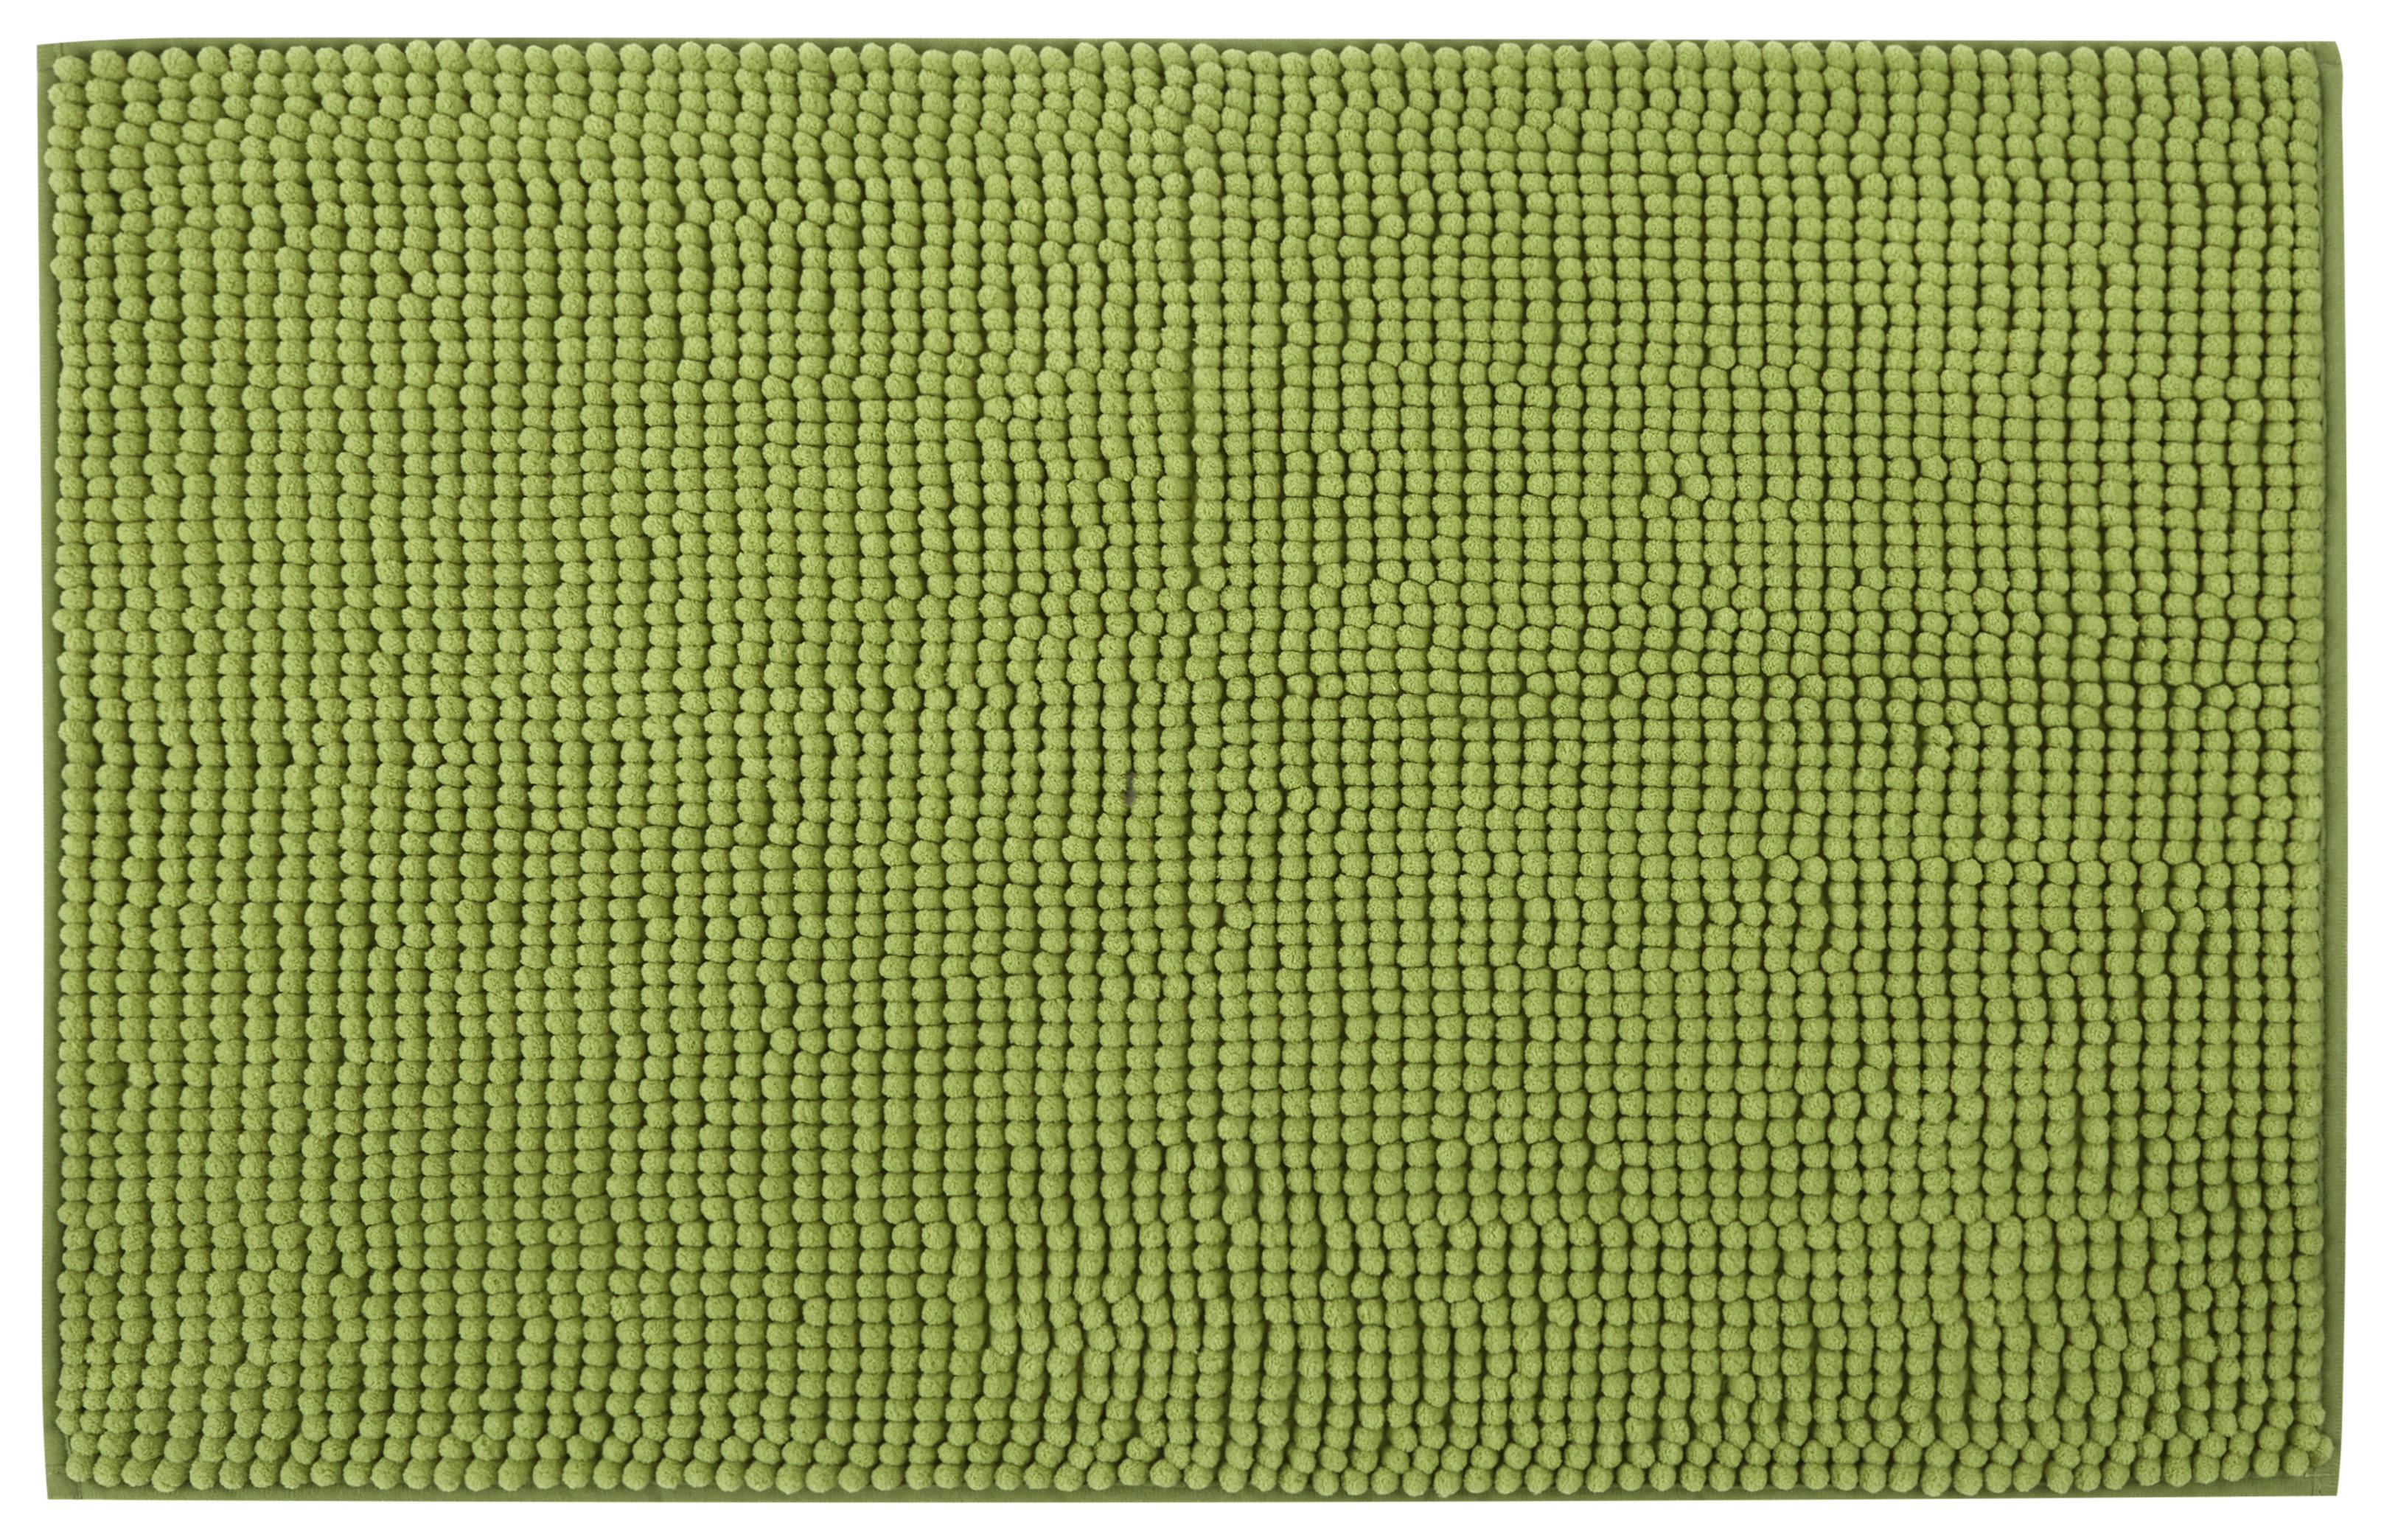 BADRUMSMATTA  50/80 cm  grön   - grön, Basics, textil/plast (50/80cm) - Boxxx